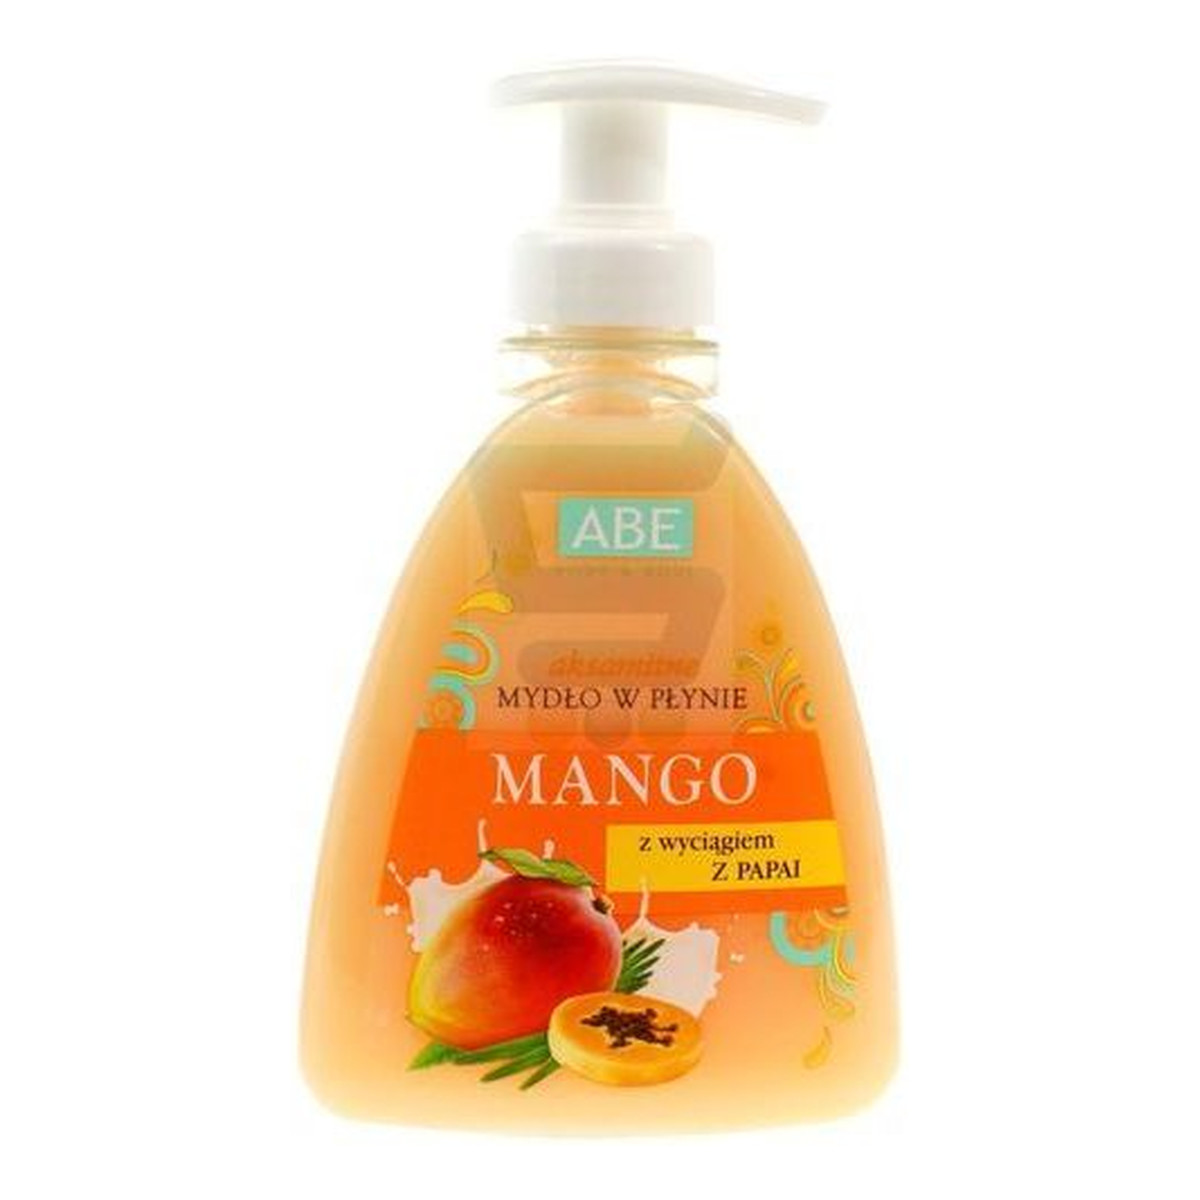 ABE Mydło w płynie mango z wyciągiem papai z pompką 500ml